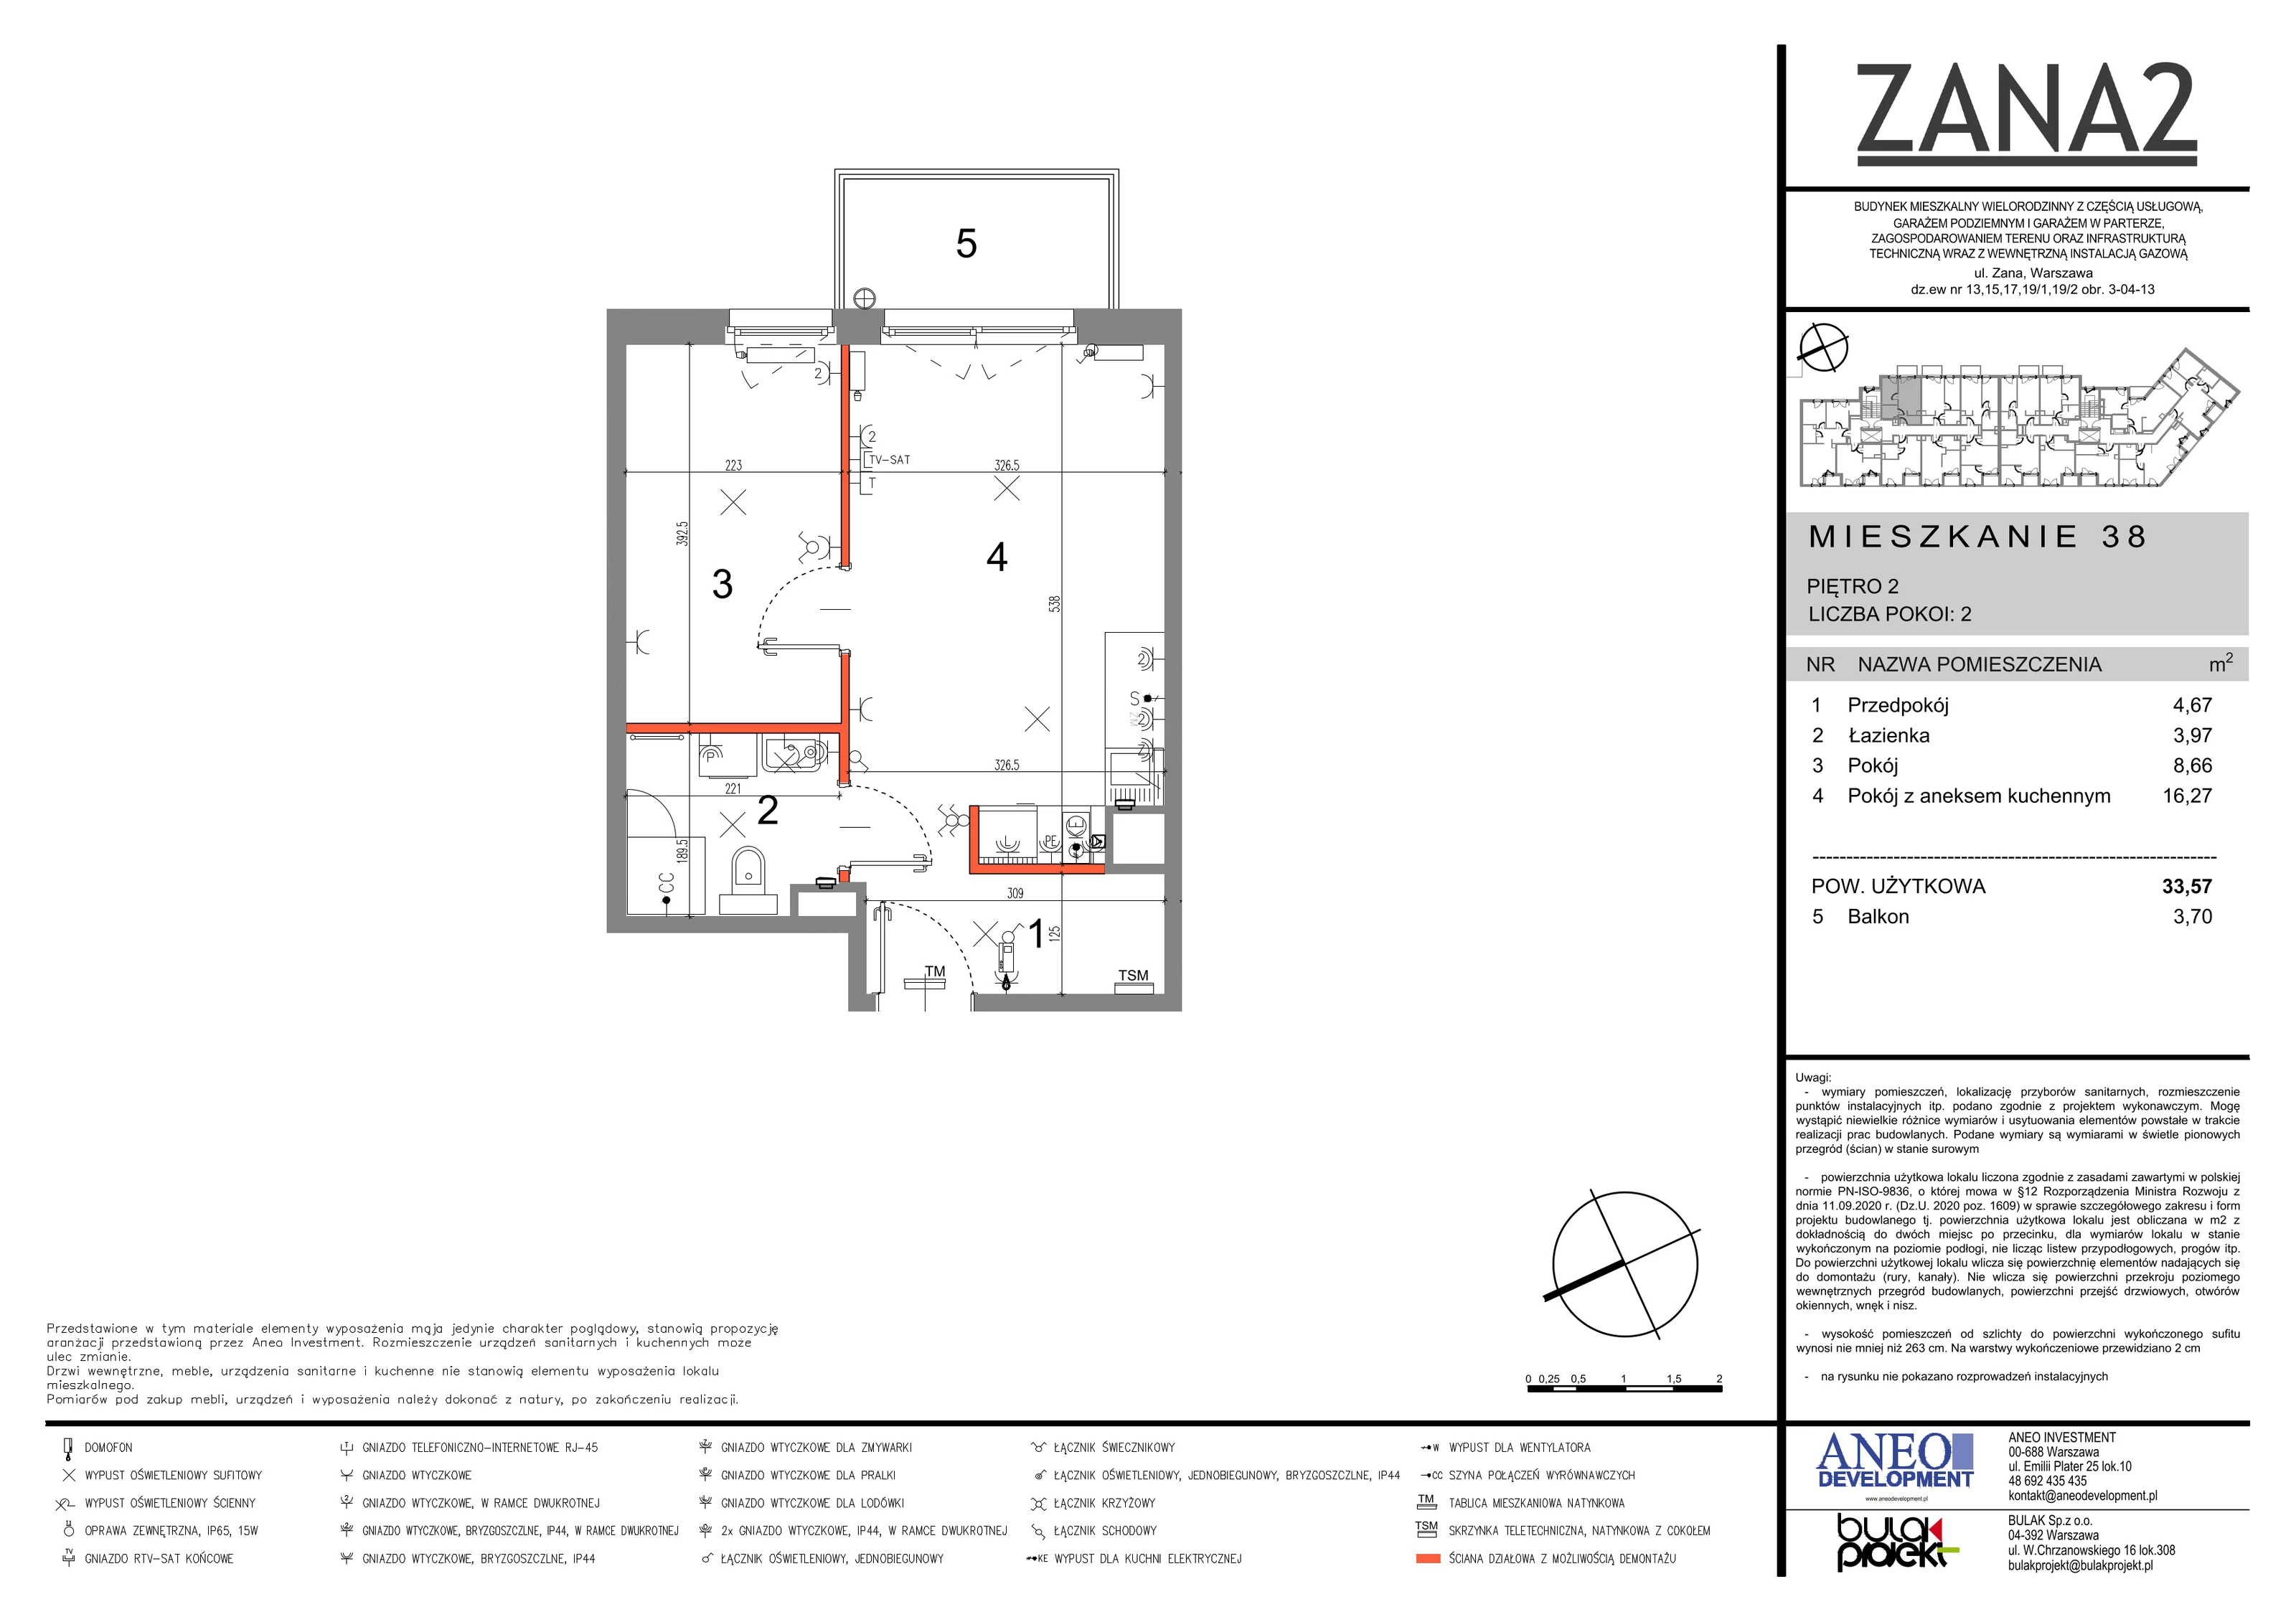 Mieszkanie 33,56 m², piętro 2, oferta nr 38, Zana 2, Warszawa, Praga Południe, Gocławek, ul. Tomasza Zana